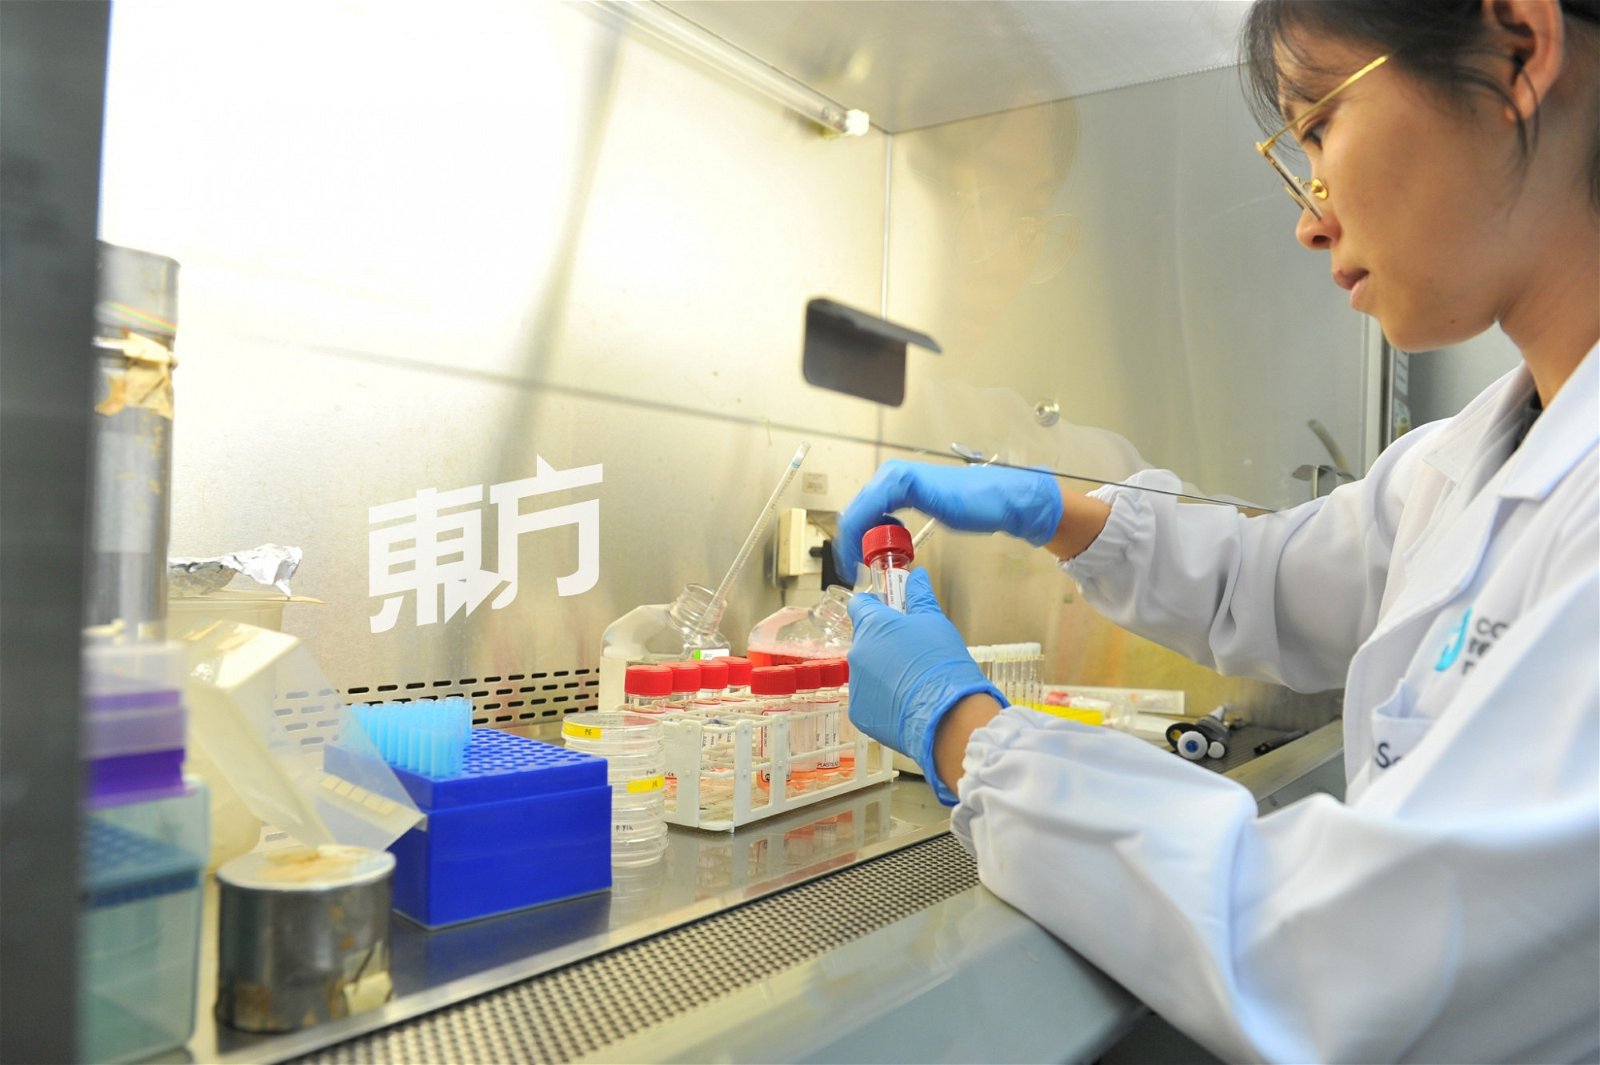 中心会抽取属于亚洲人的癌细胞作为研发标本，进而研发出适合亚洲人的治疗方案。